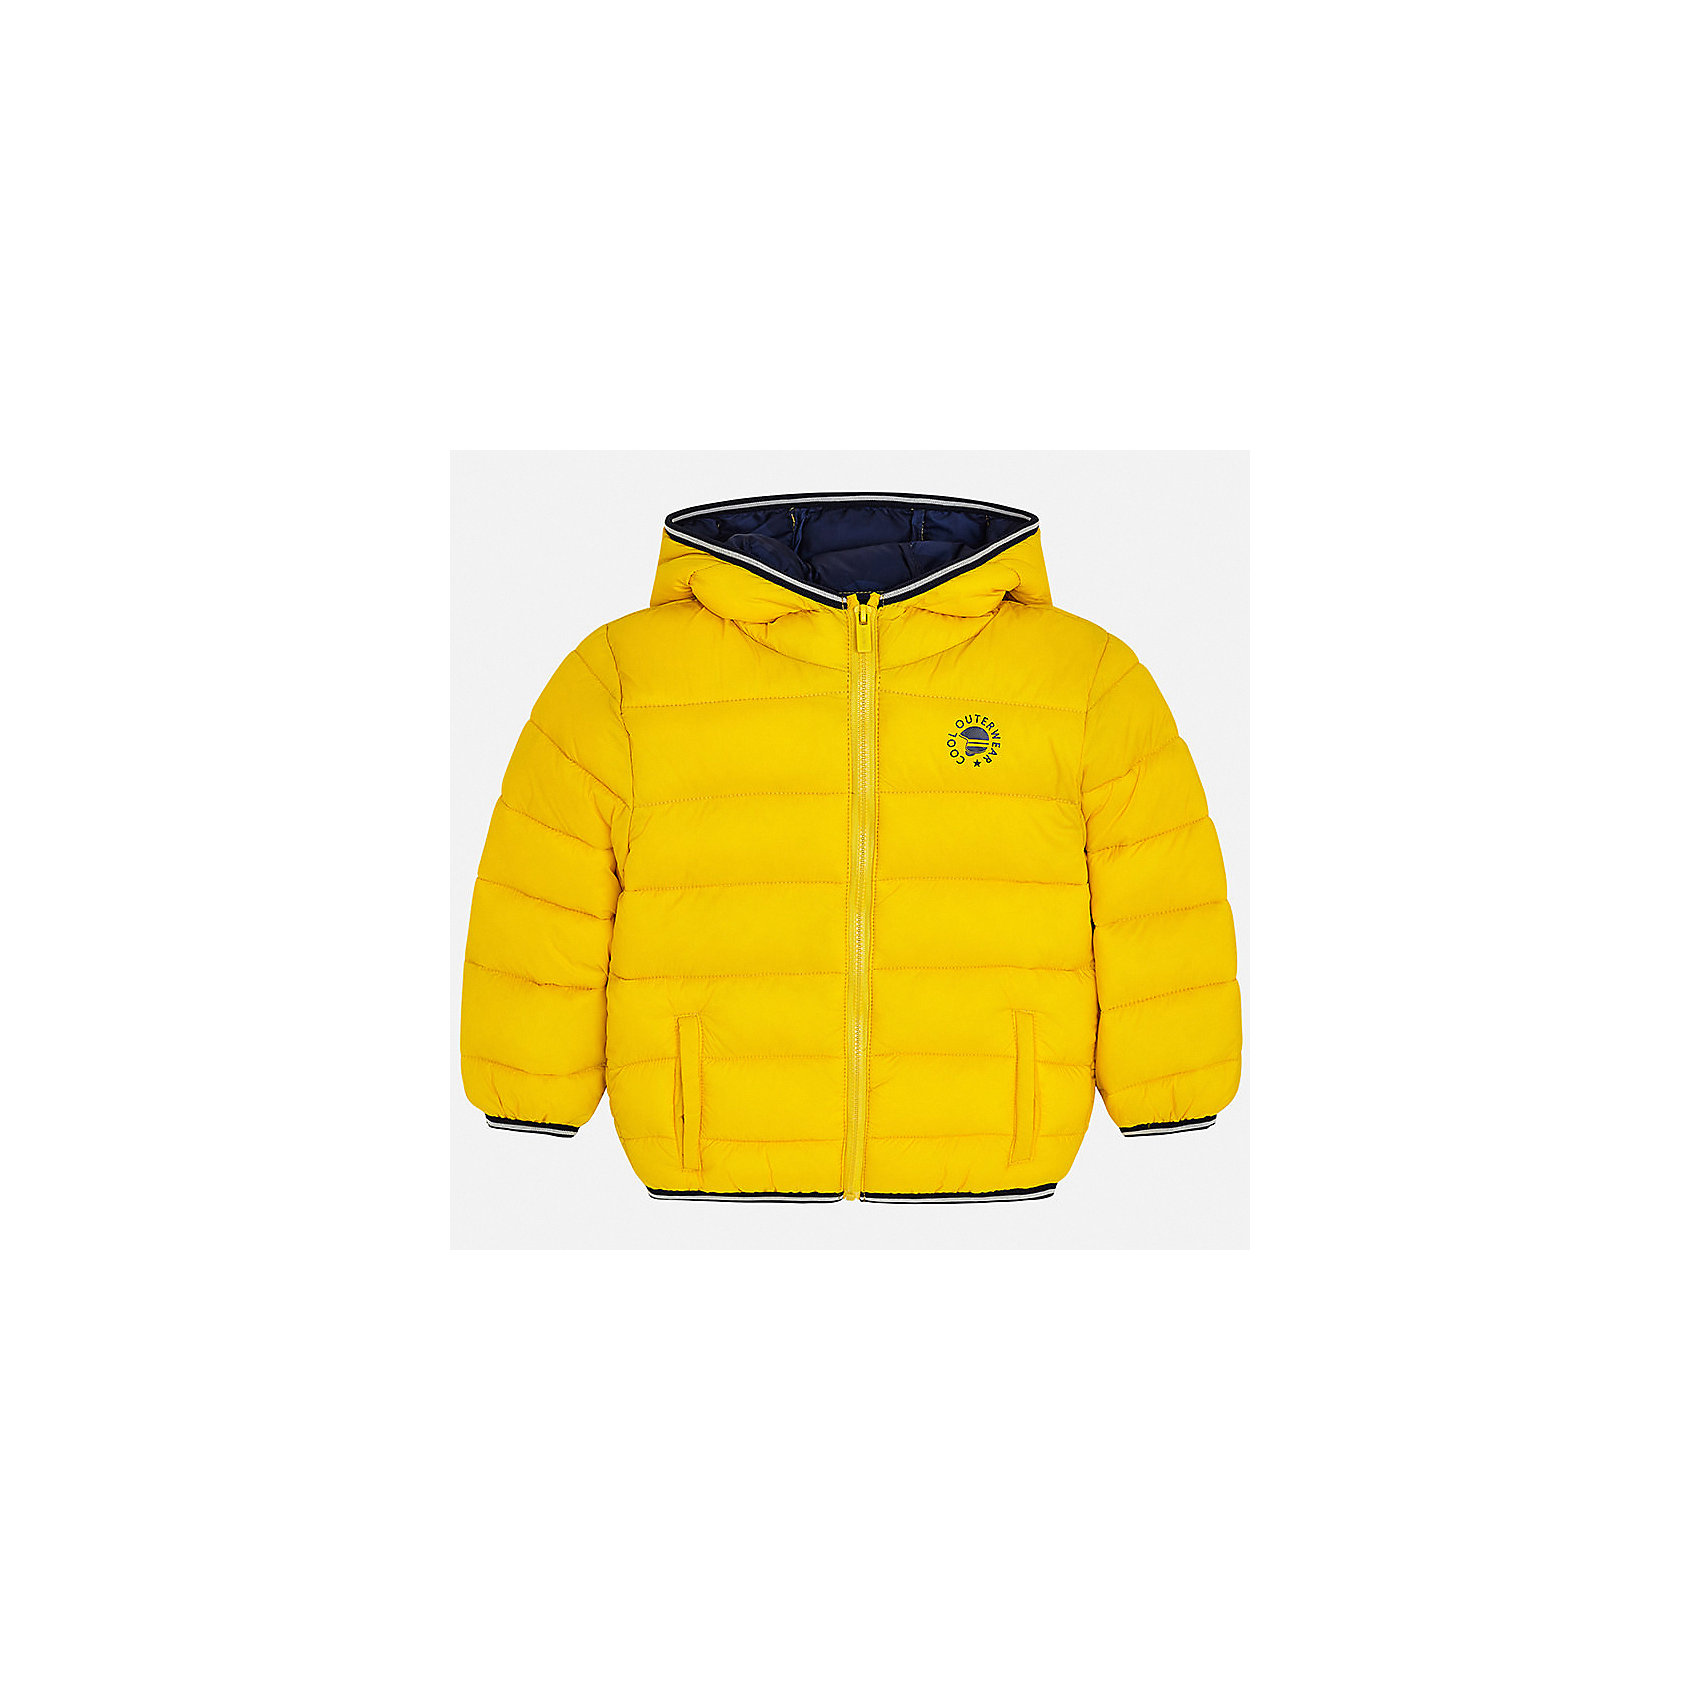 Купить желтые мальчику. Желтое поло Mayoral 4106-65 для мальчика. Ozi boy желтая куртка. Куртка Майорал для мальчика желтая. Желтая демисезонная куртка h&m на мальчика.